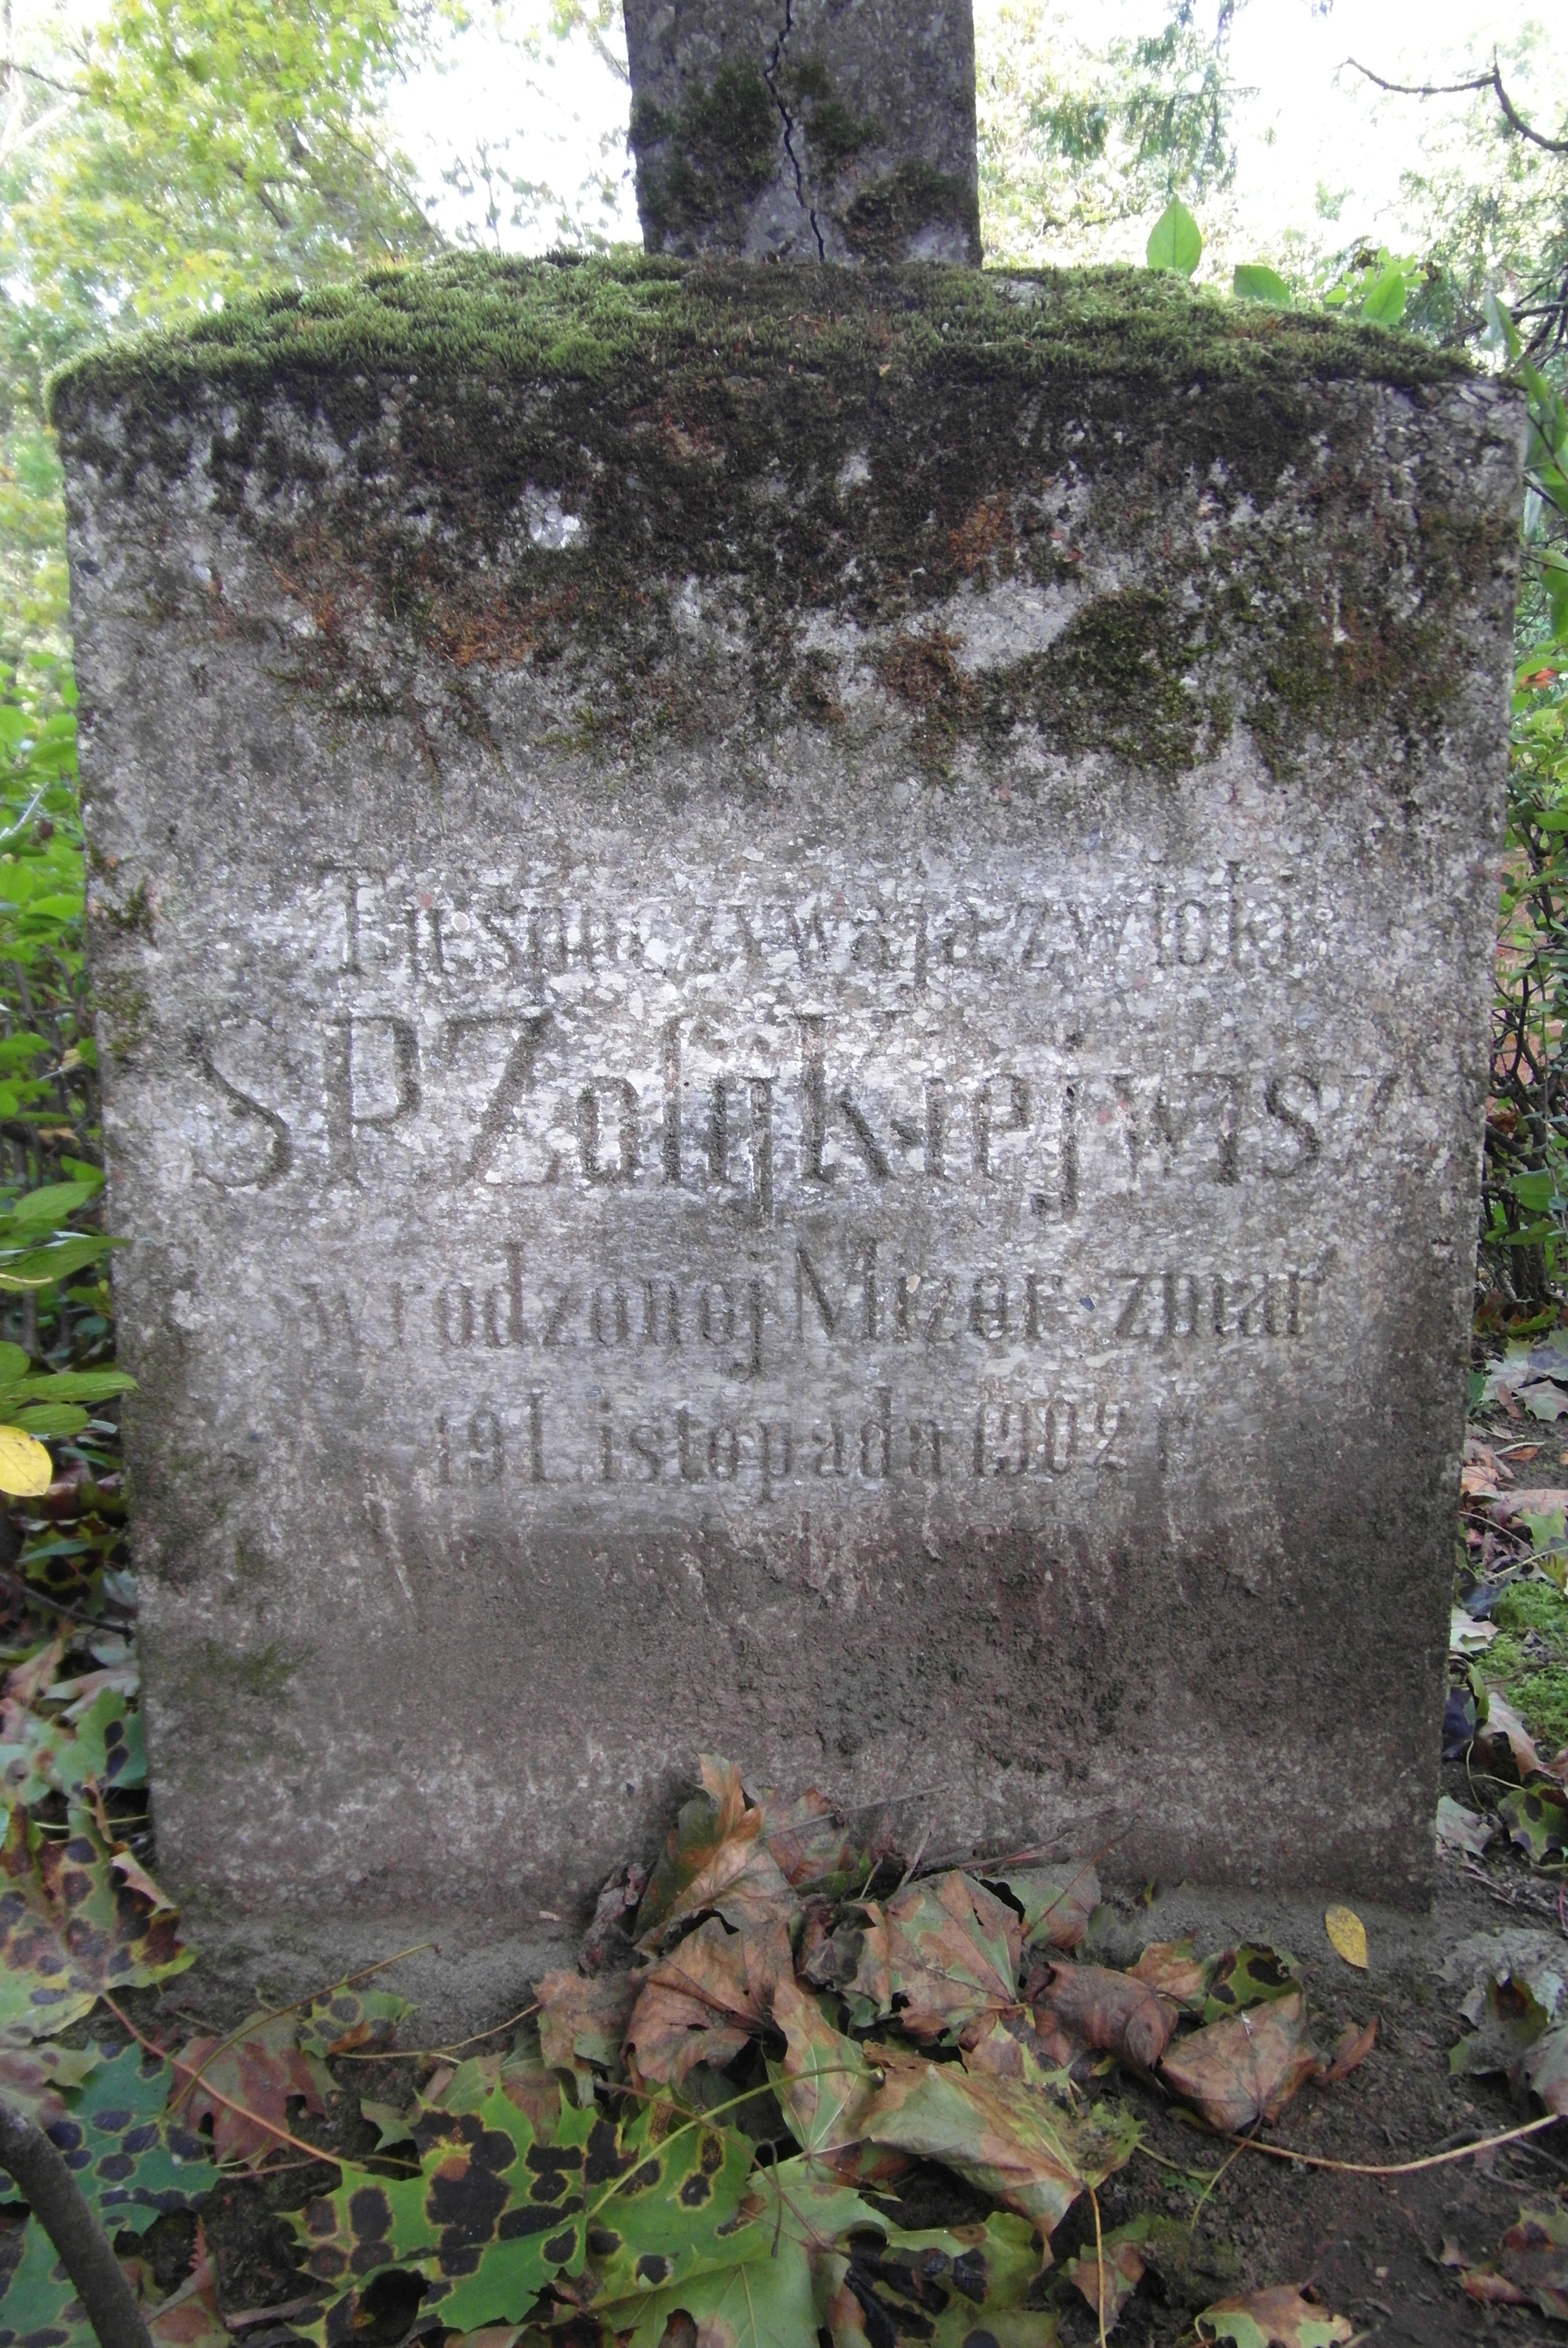 Napis z nagrobka Zofii Kiejwisz, cmentarz św. Michała w Rydze, stan z 2021 r.